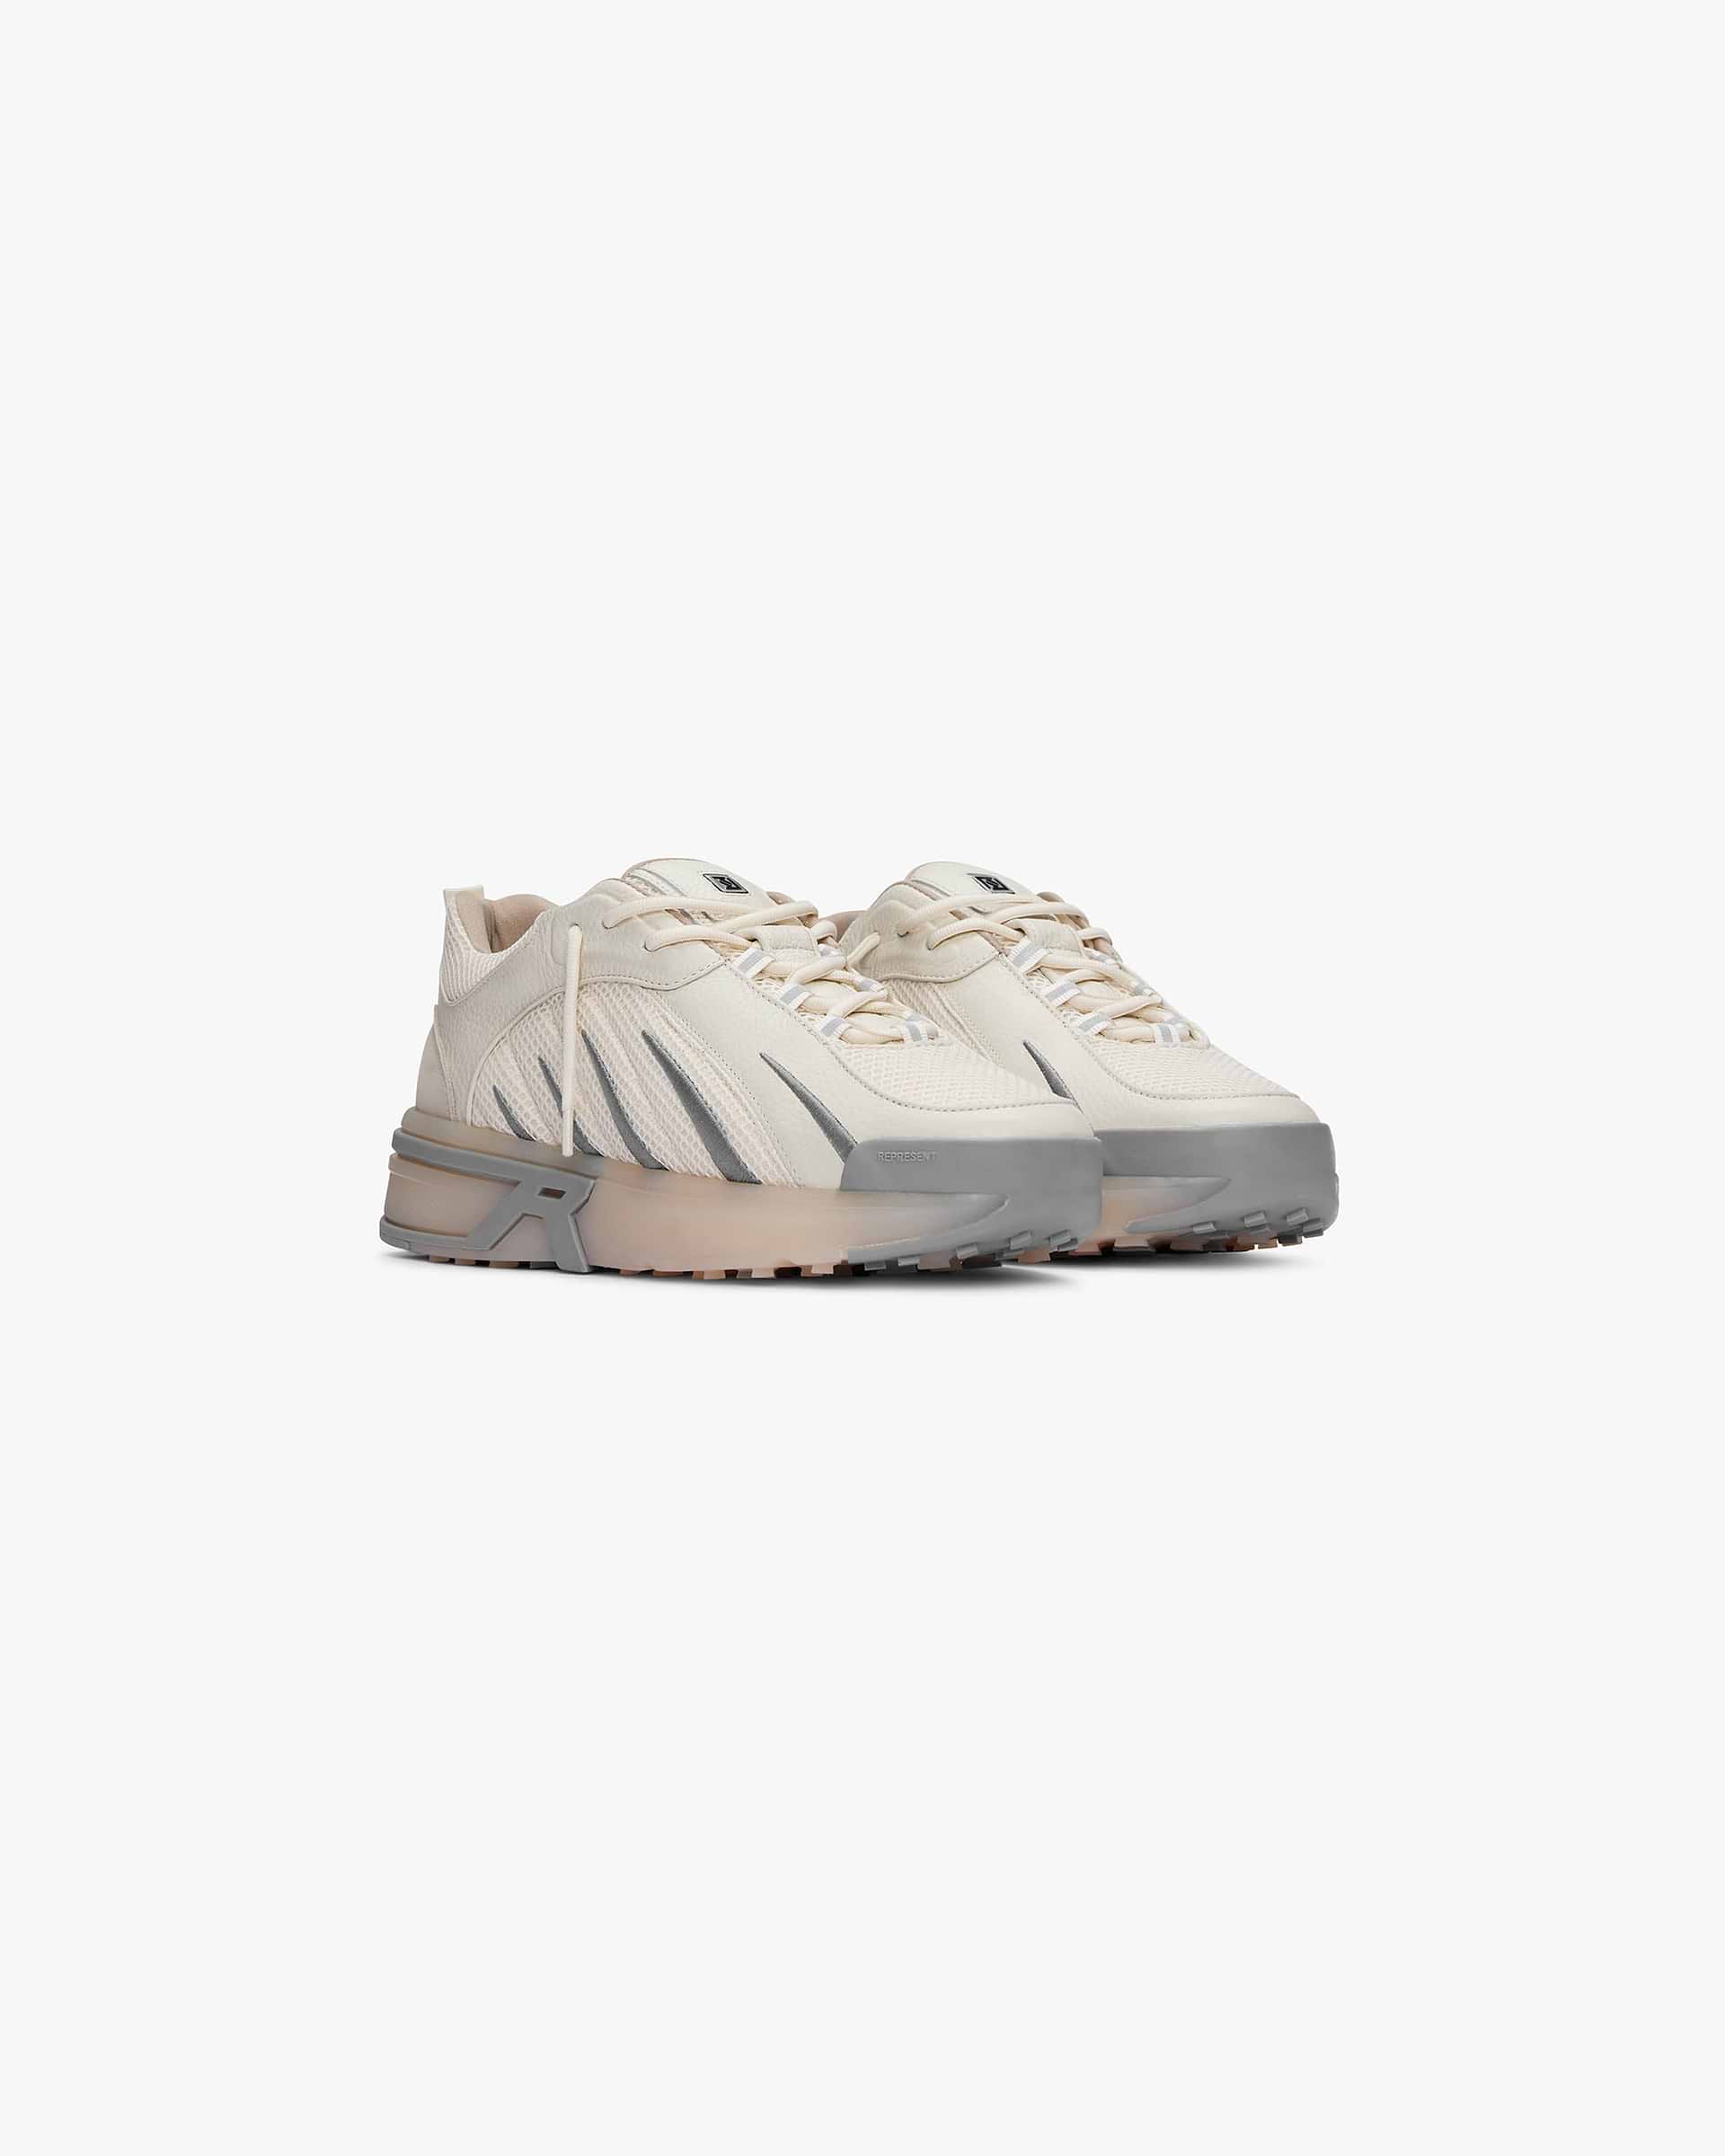 Viper | Cream Footwear SS23 | Represent Clo